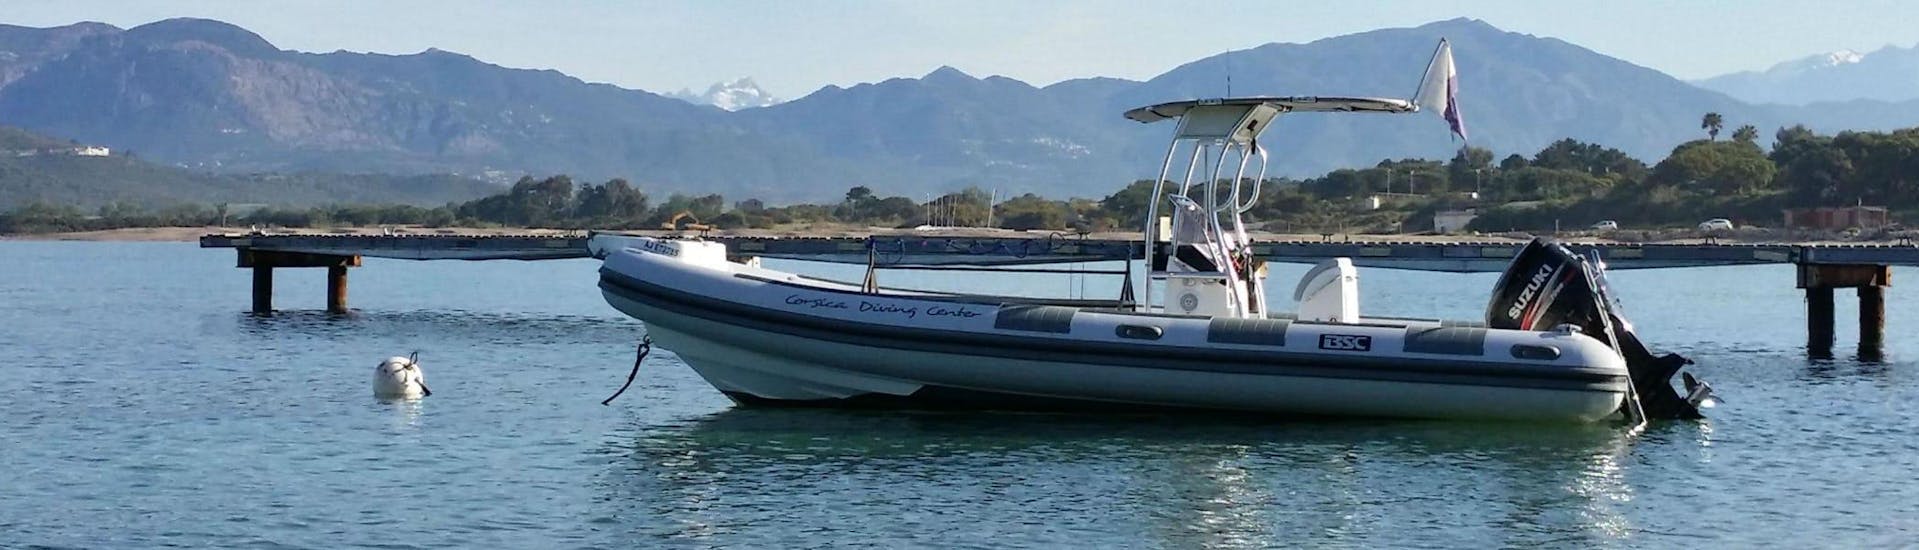 Bild des Bootes während des PE12 Tauchkurses im Golf von Ajaccio für Anfänger mit Maeva Plongée.